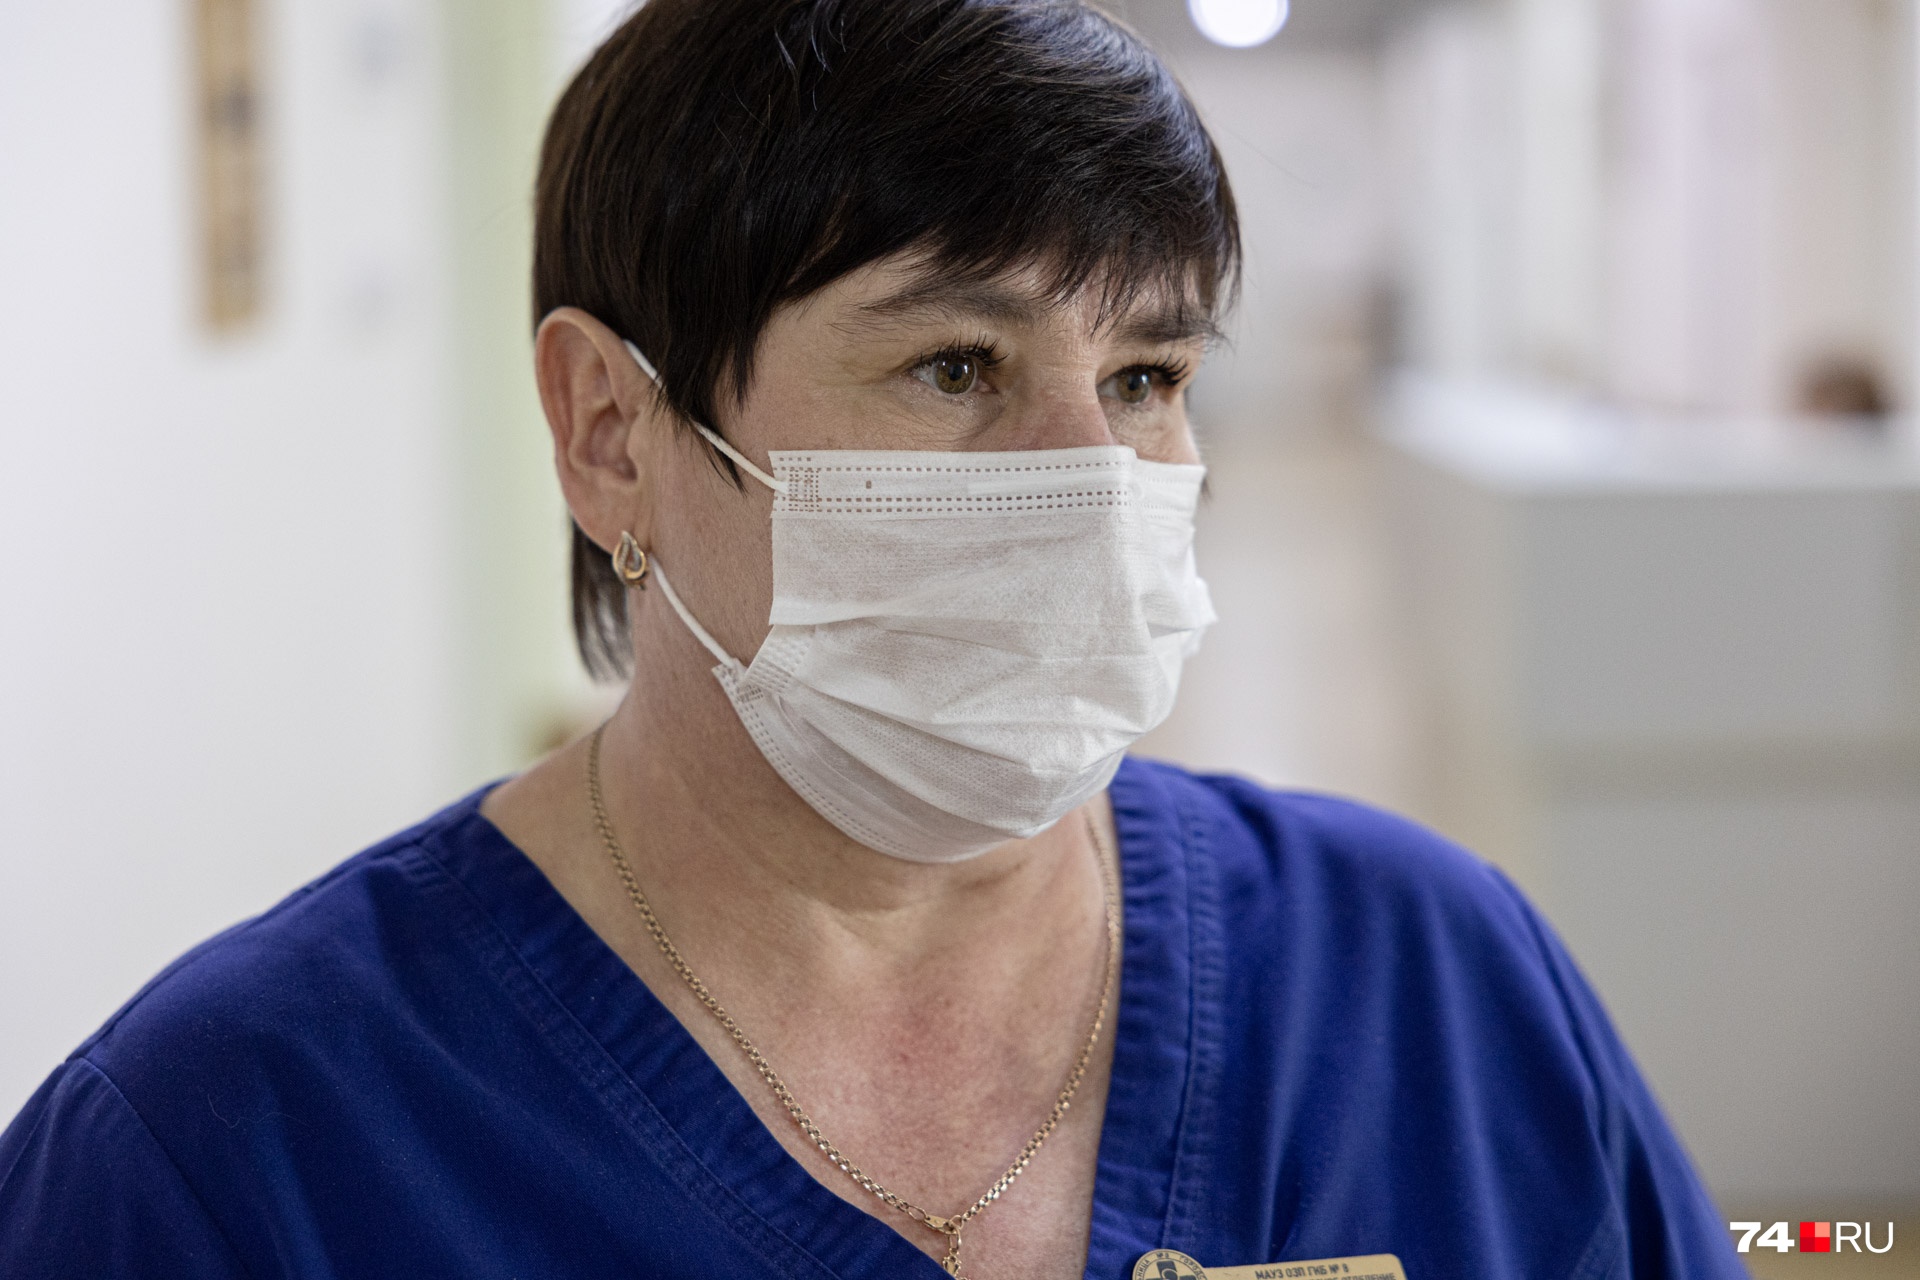 Валентина Шилова — старшая медсестра, порядок в отделении для нее — приоритет